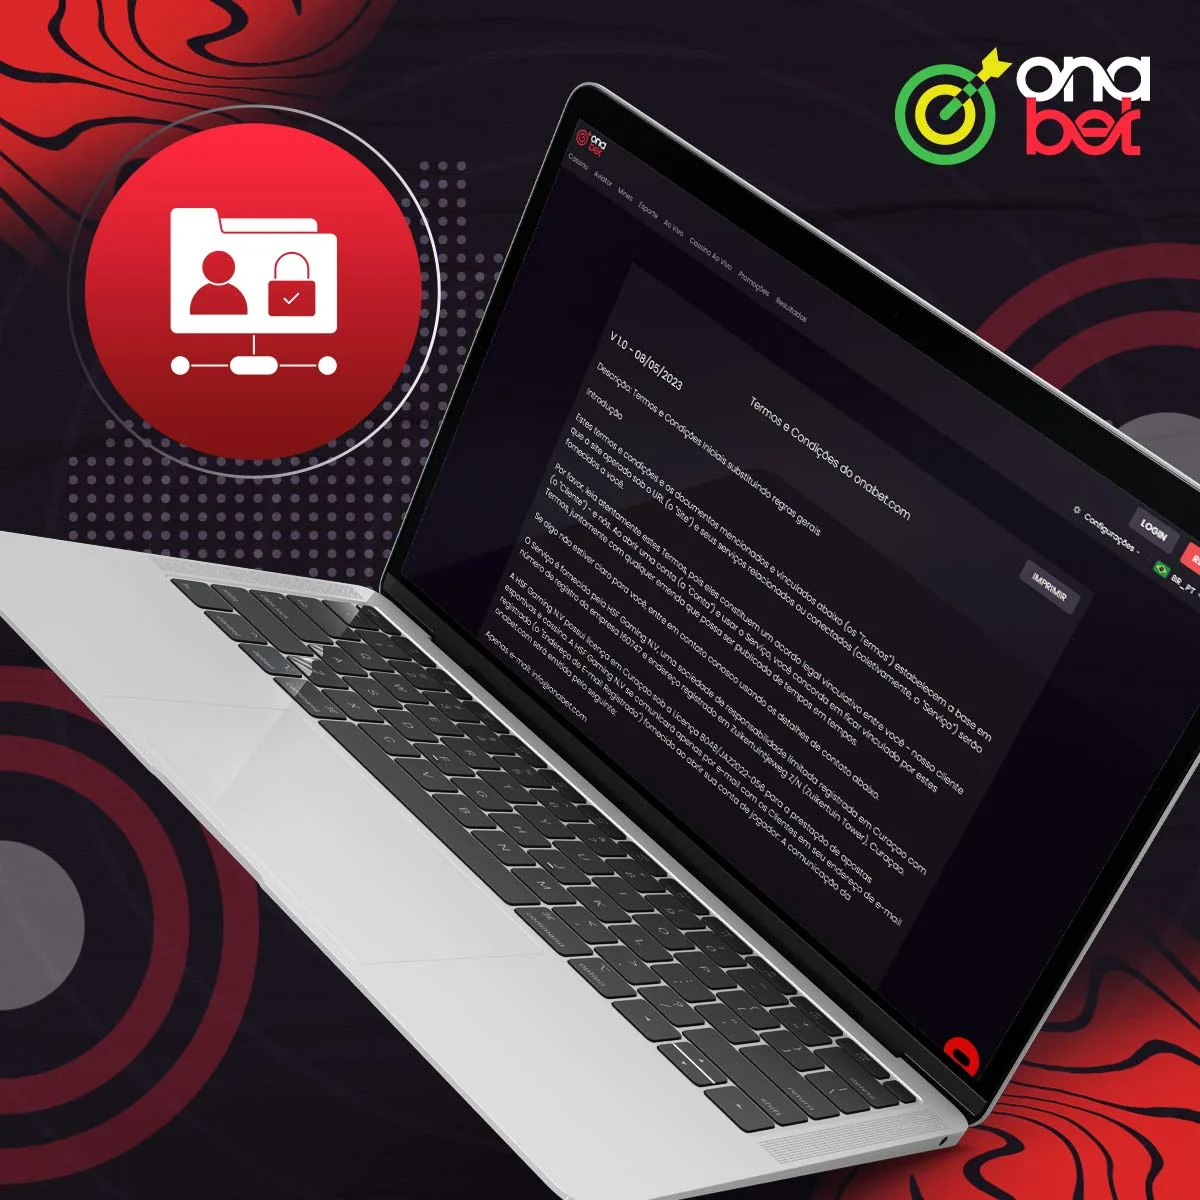 A plataforma da OnaBet garante que as informações permanecem confidenciais